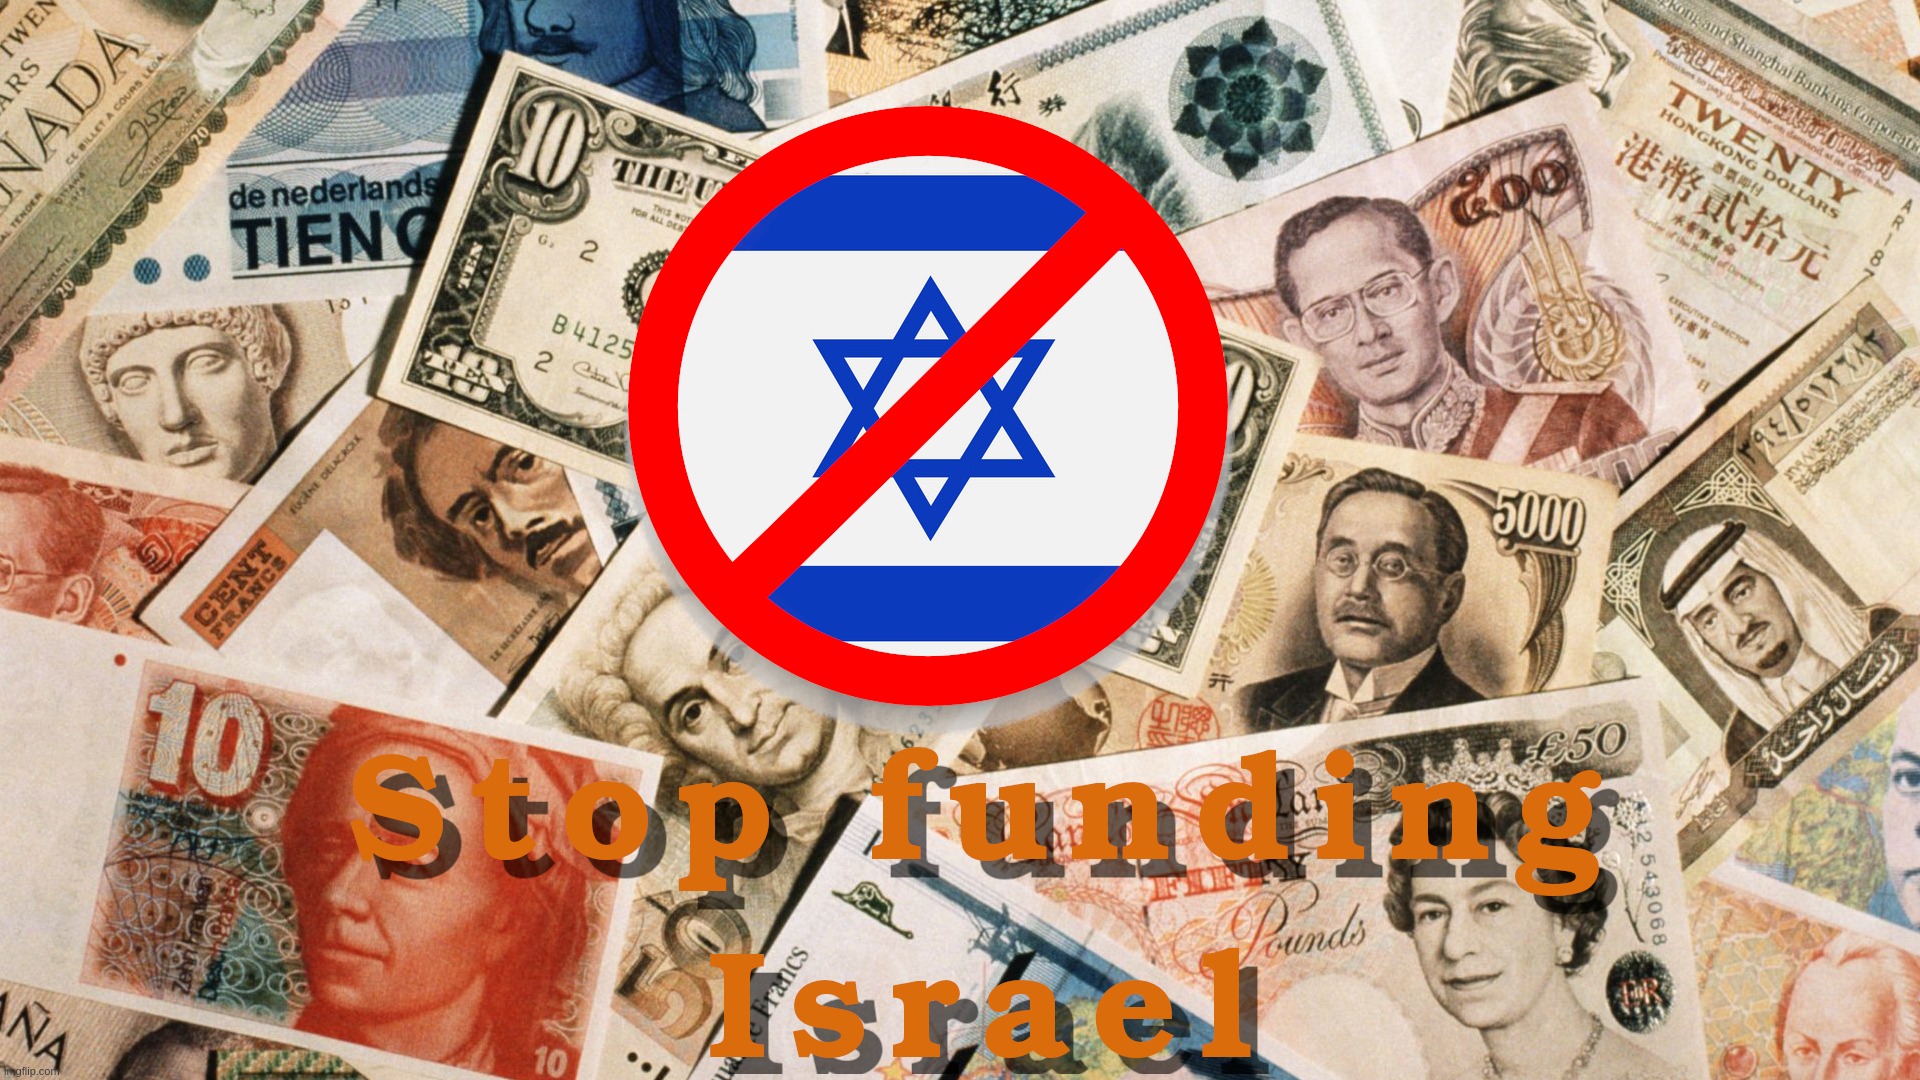 Stop funding Israel Imgflip